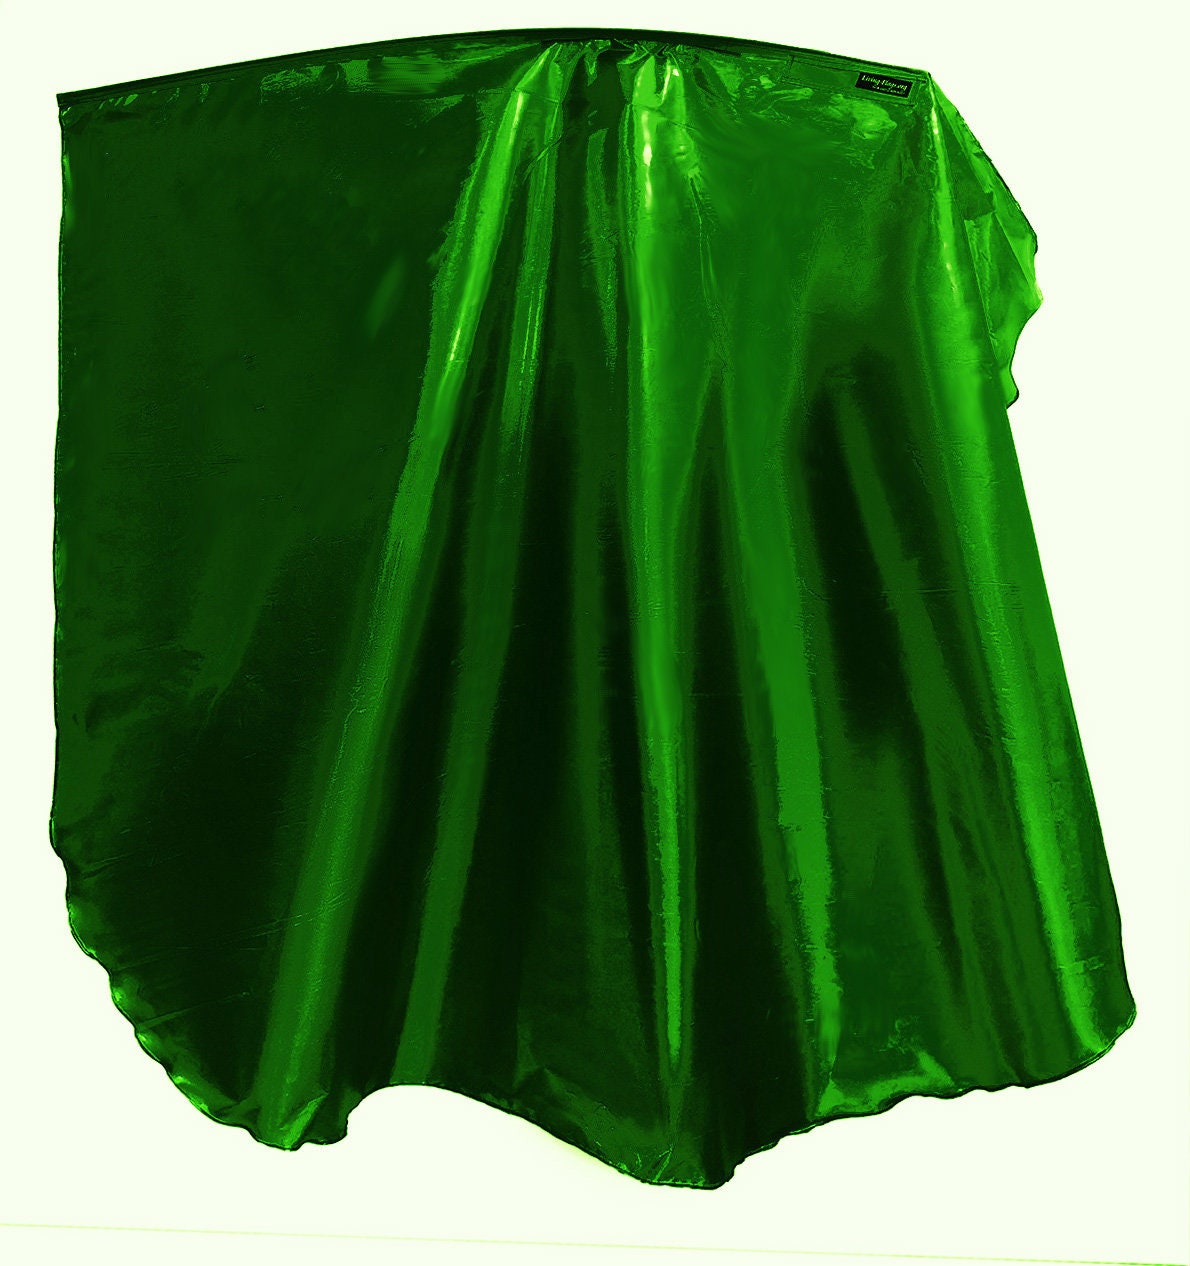 WXLL-Quill - Liquid Metal Emerald Green Wing Flag - 40" Flexible Rod